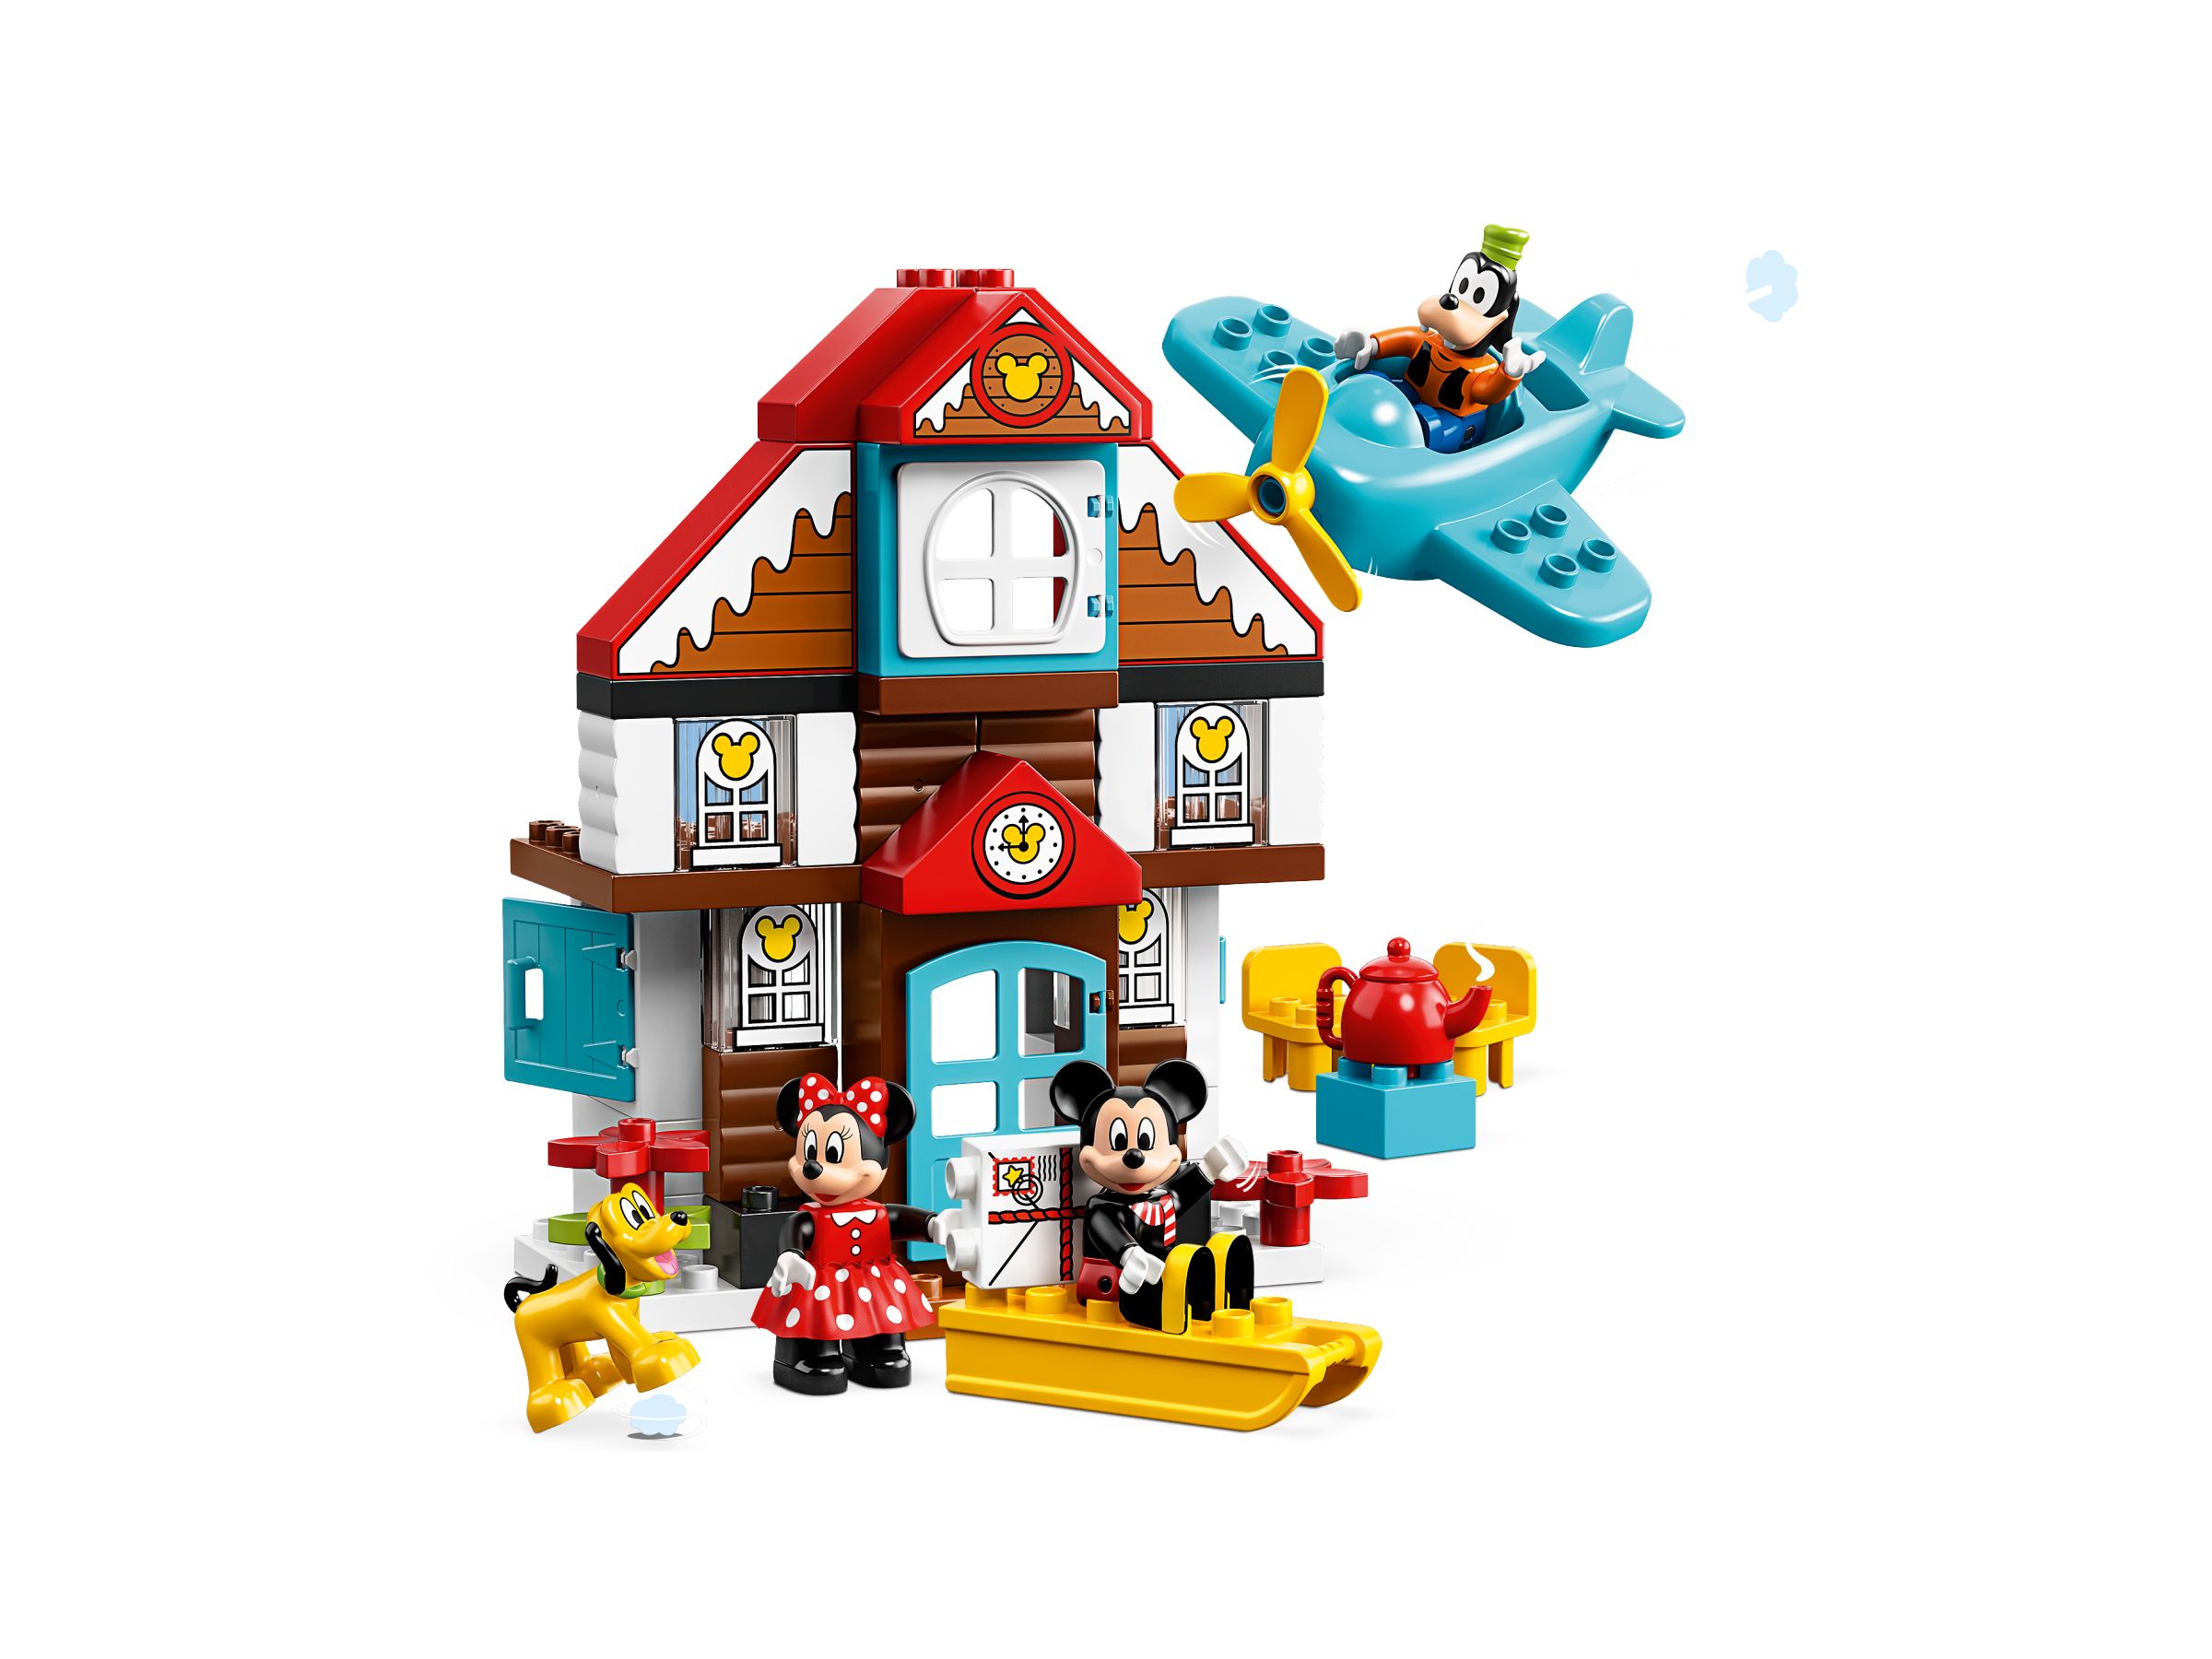 LEGO Duplo 10889 Mickys winterliches Ferienhaus LEGO_10889_alt2.jpg